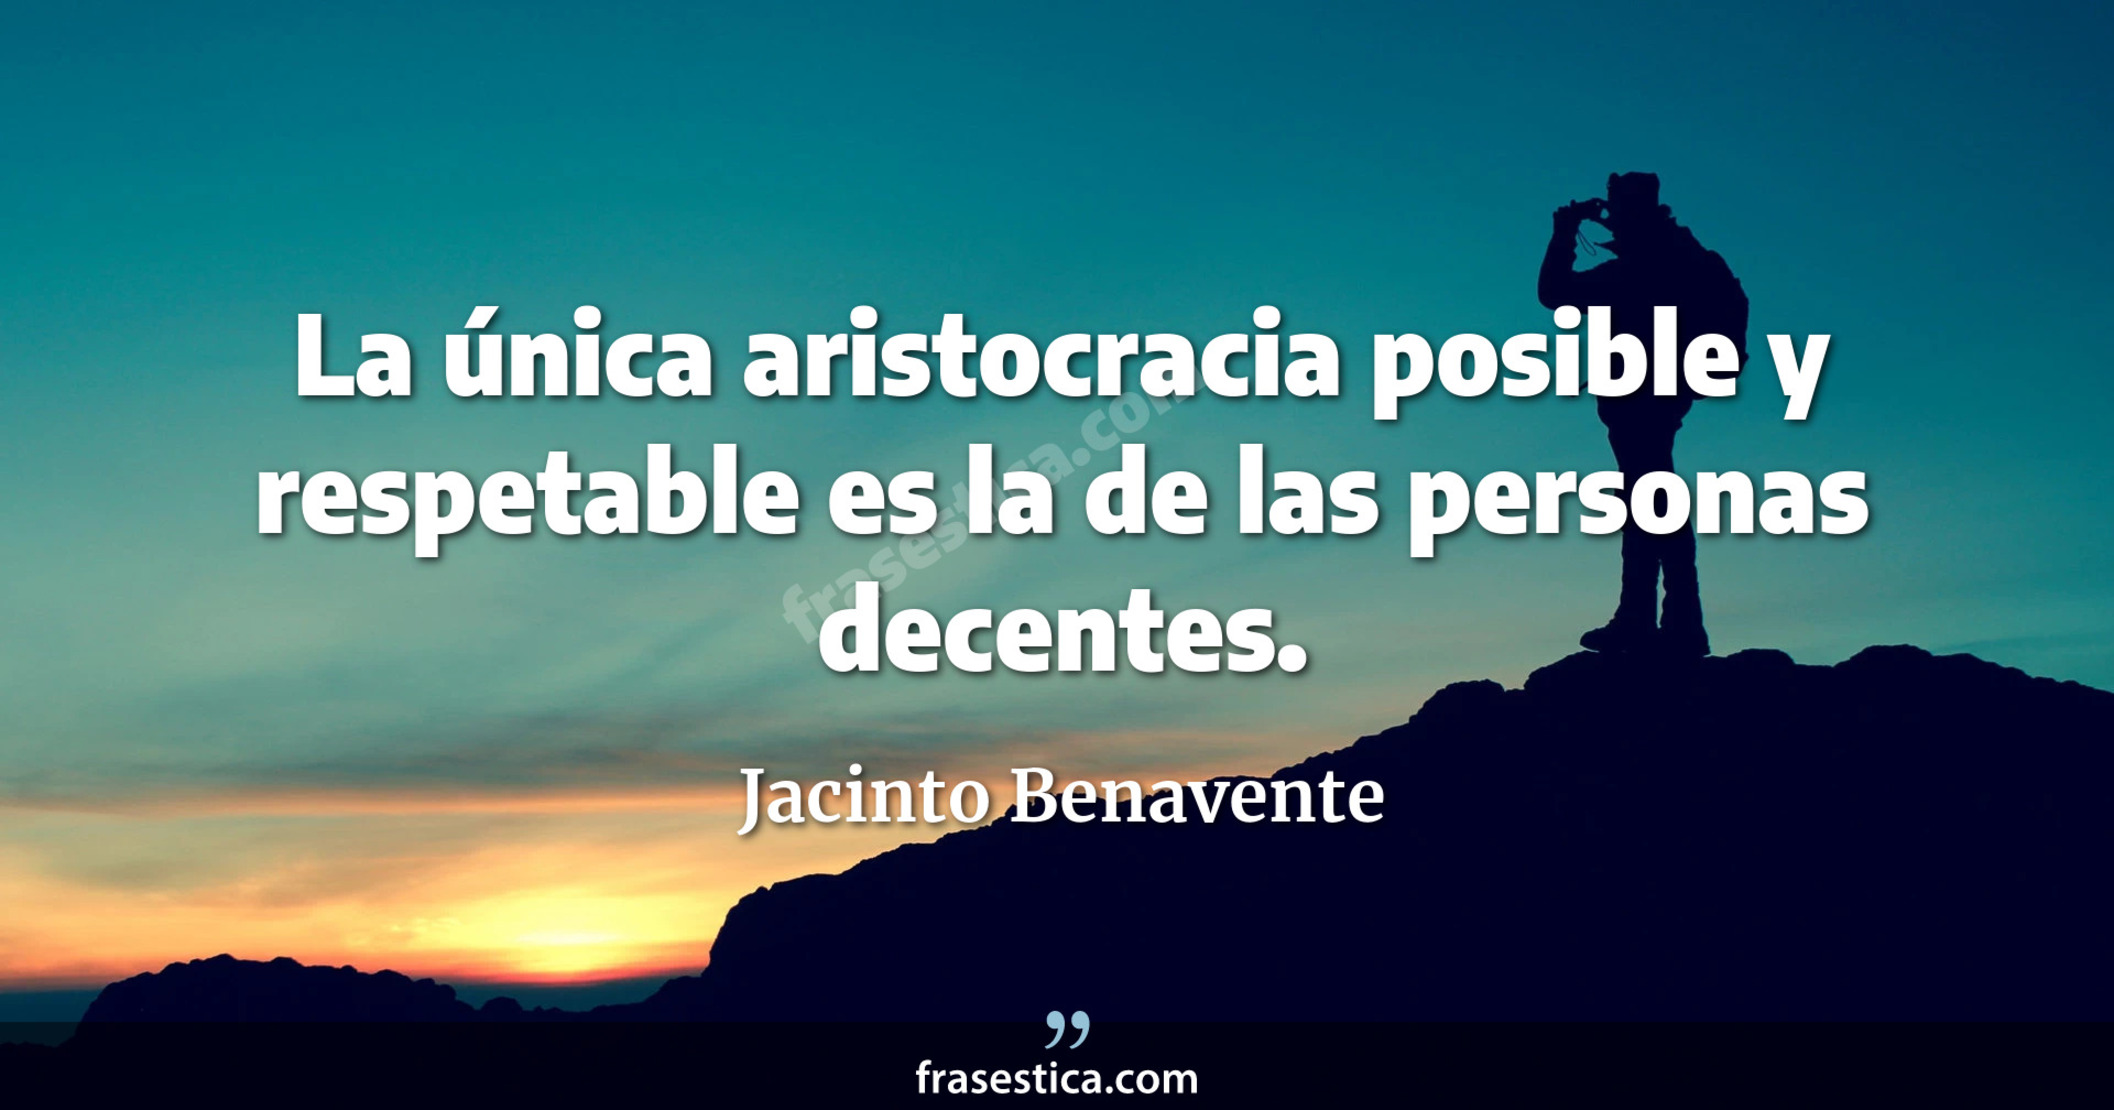 La única aristocracia posible y respetable es la de las personas decentes. - Jacinto Benavente